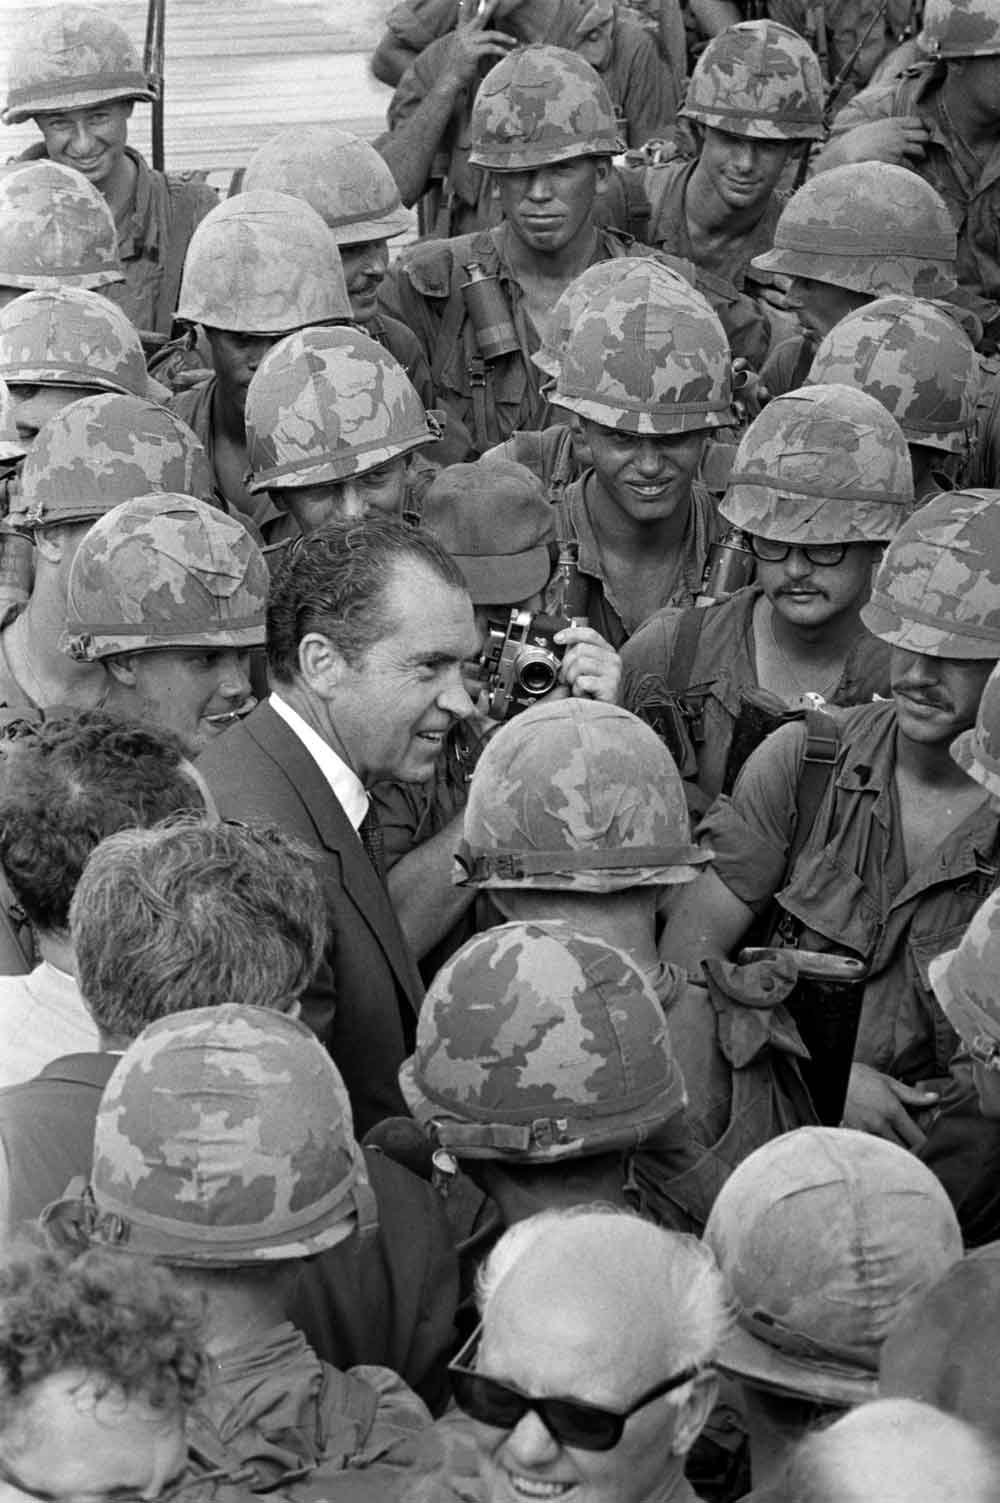 President Nixon visiting U.S. troops in South Vietnam